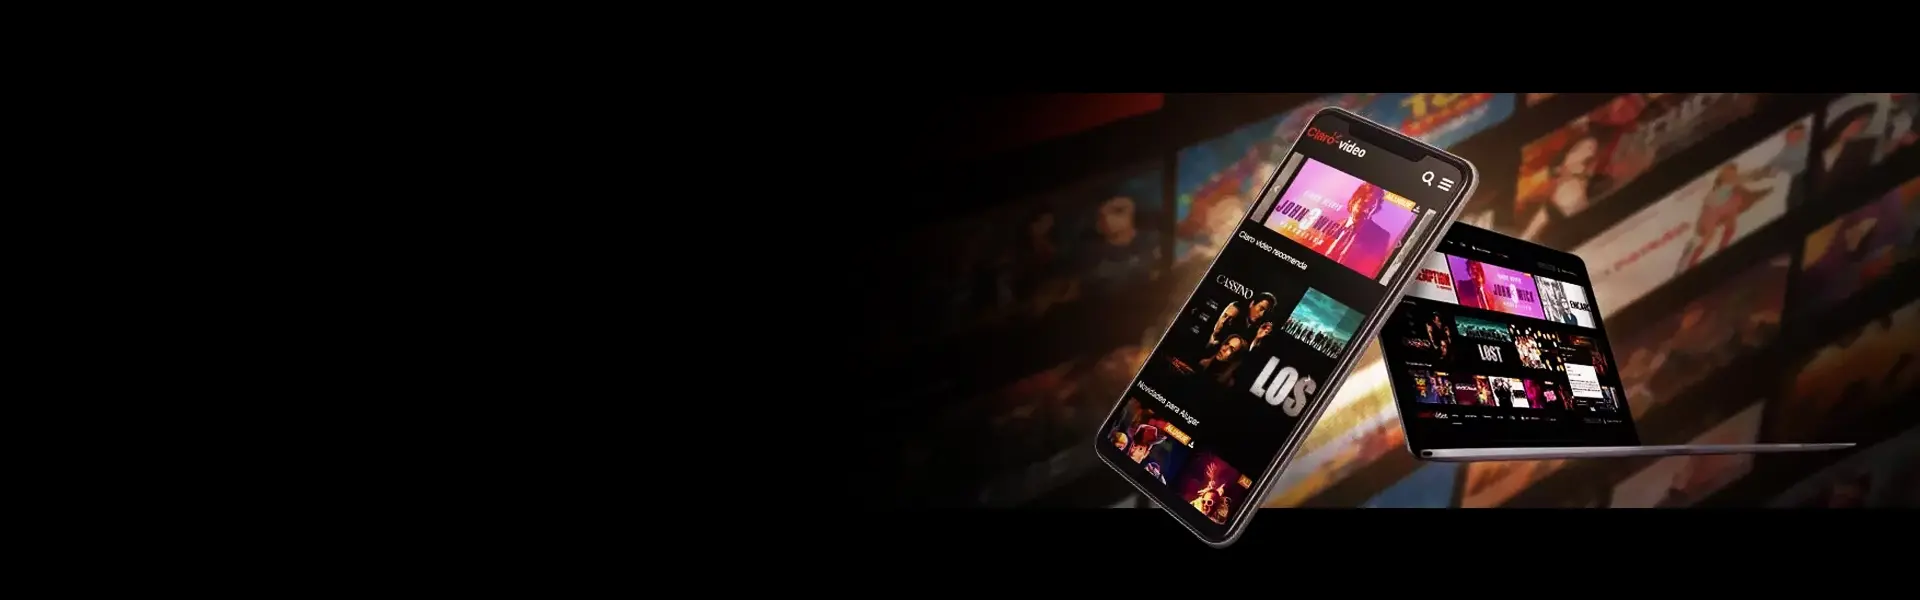 Imagem do banner da pagina de Claro video mostrando um celular e um tablet em destaque.